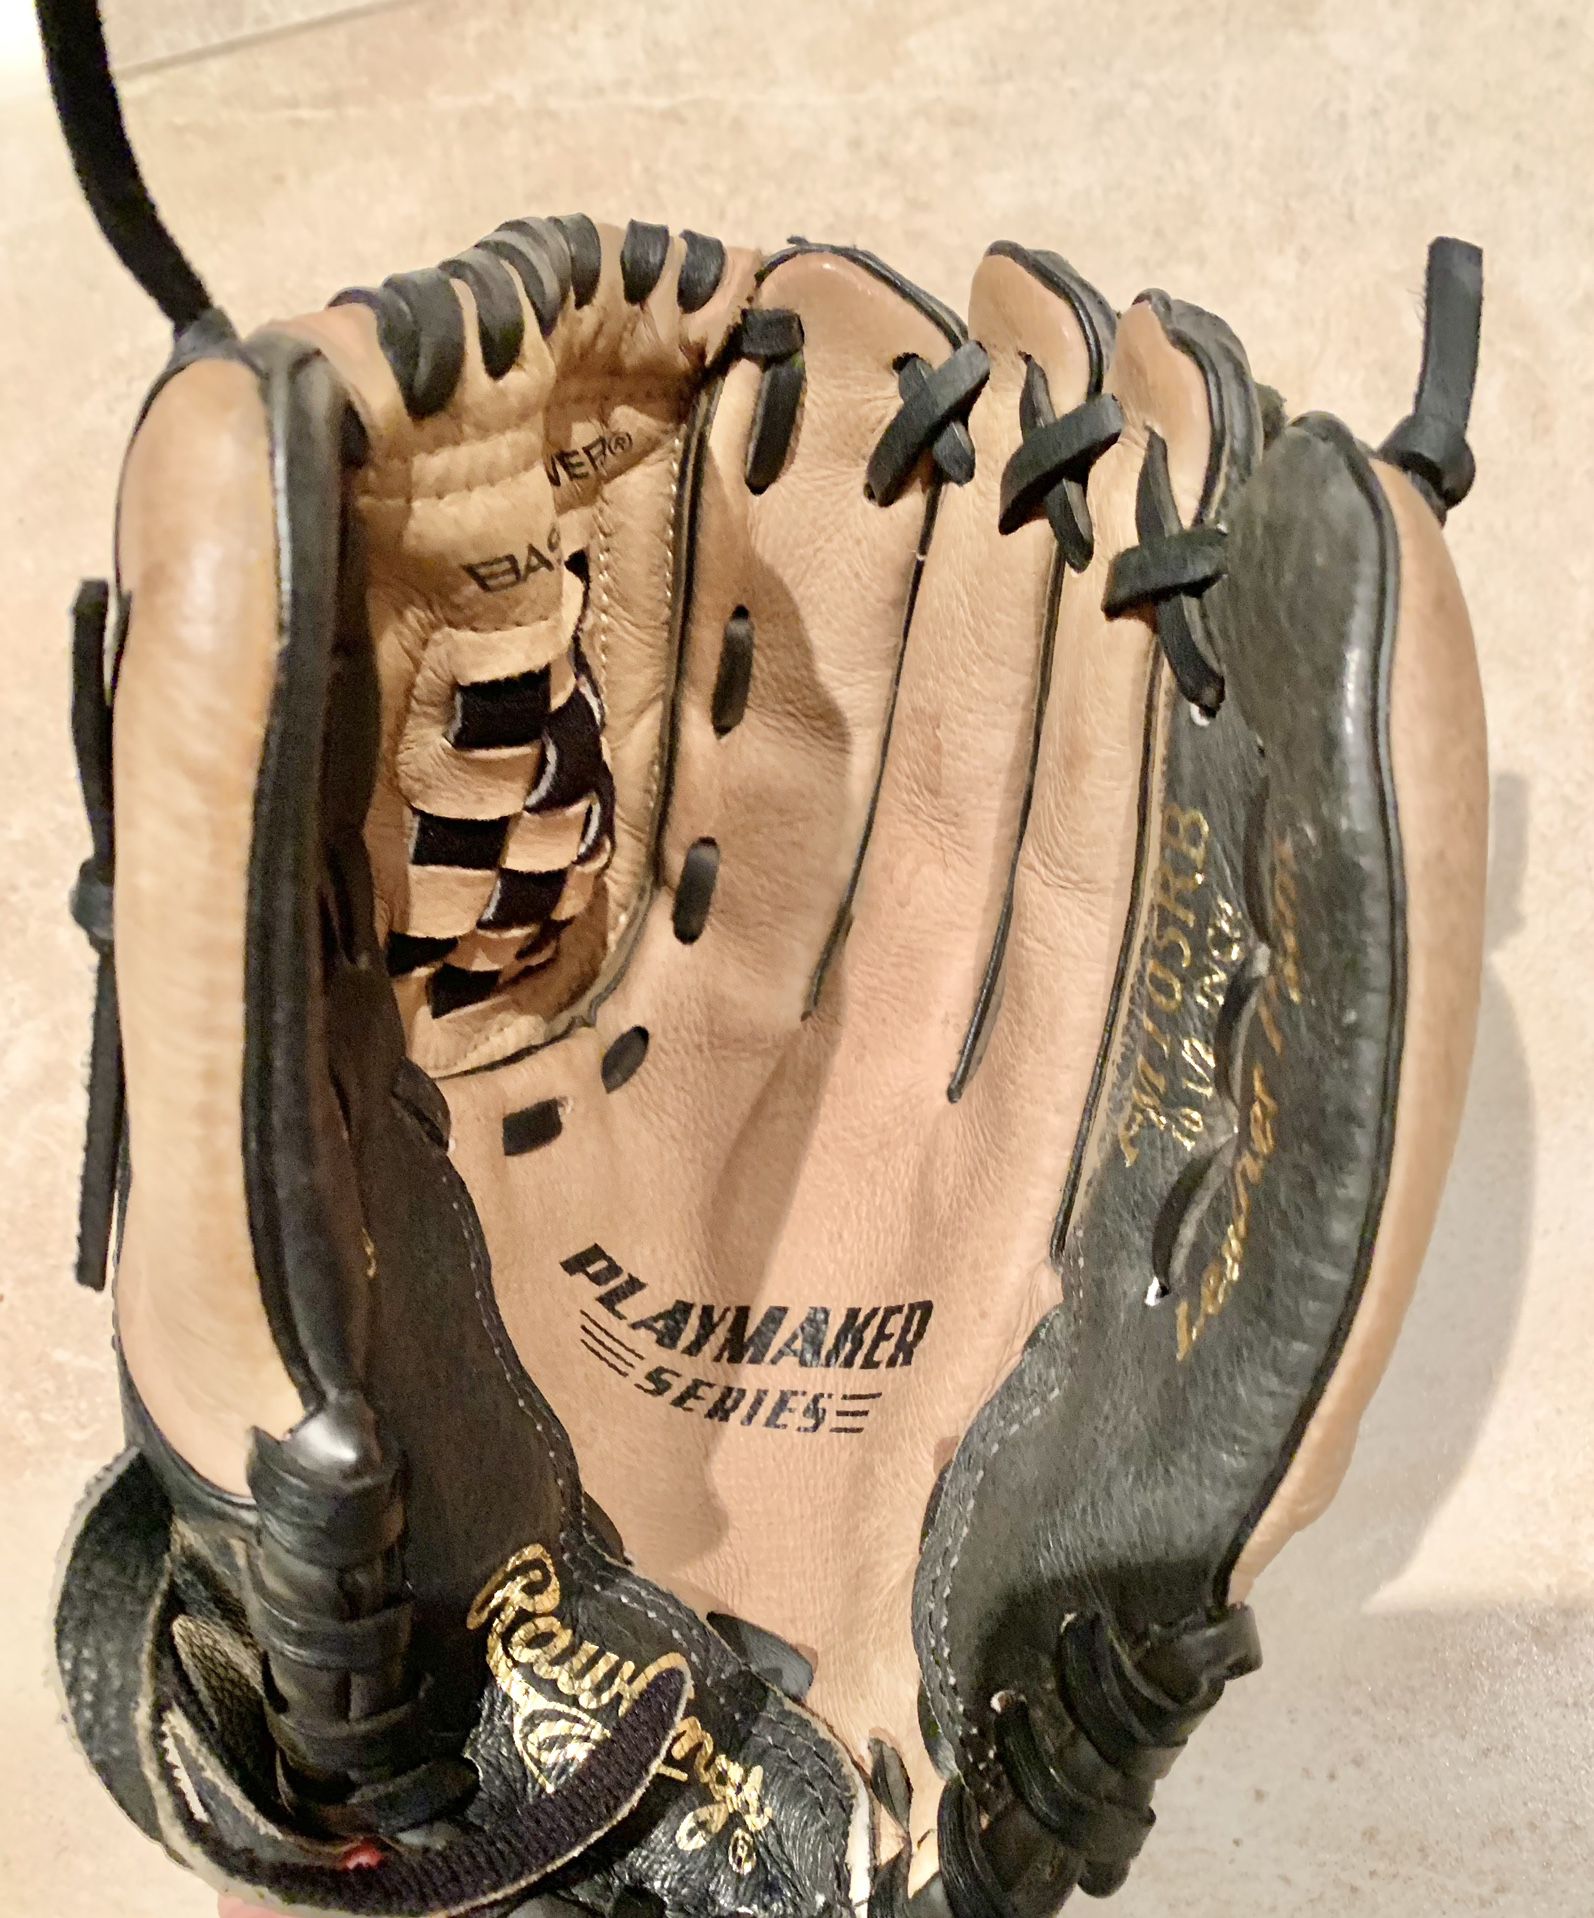 Kids’ Rawlings Baseball Glove - Size 10.5